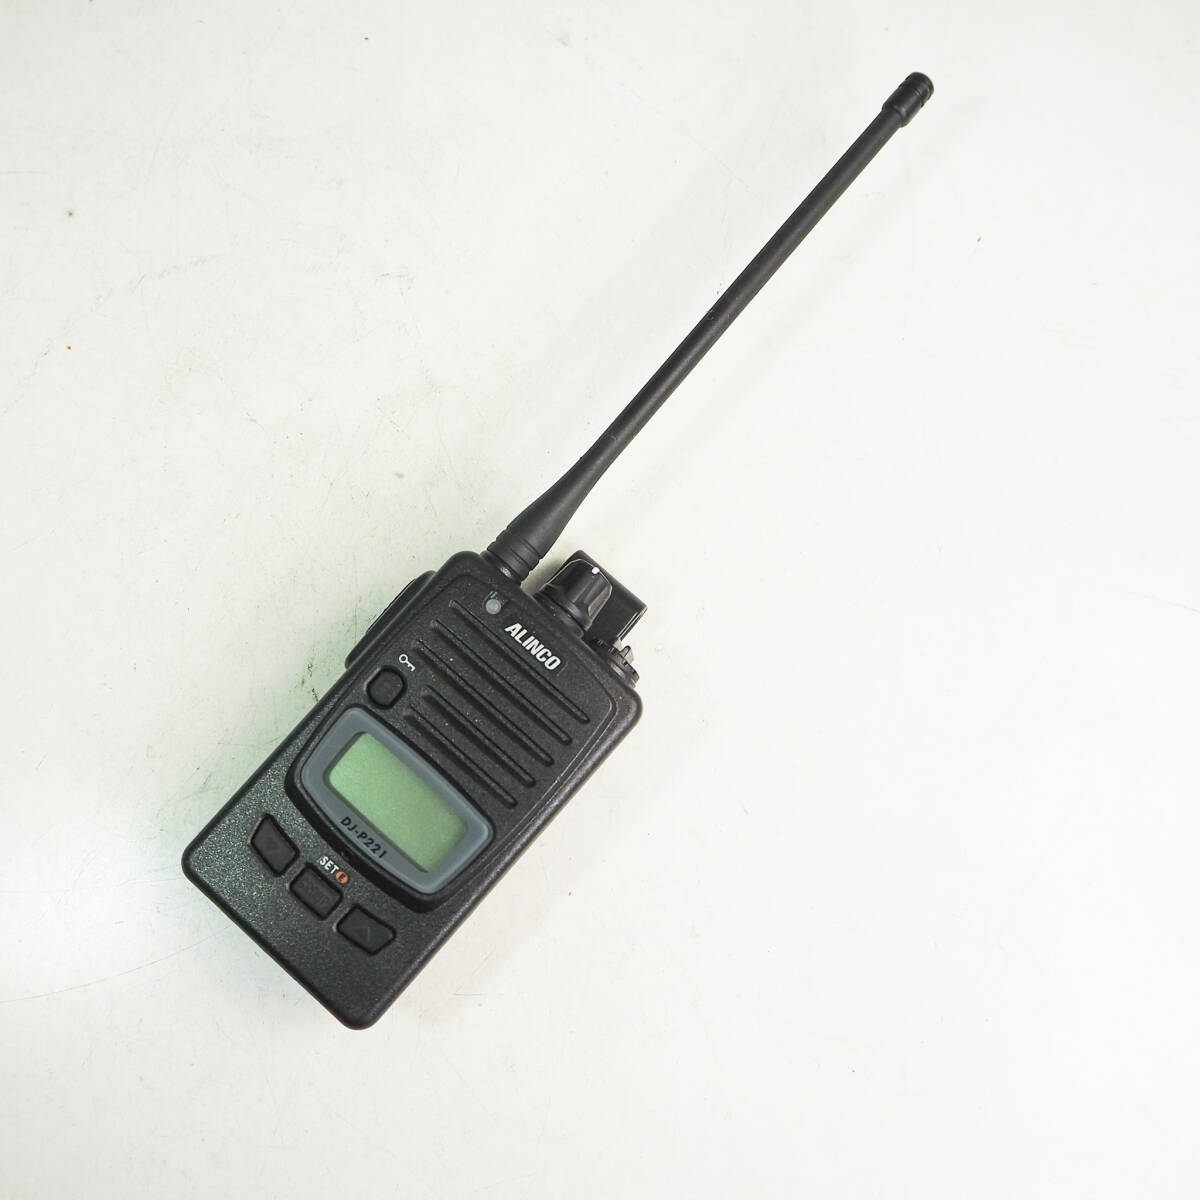 【ジャンク】ALINCO アルインコ 特定小電力トランシーバー DJ-P221 無線電話装置 無線機 CO3382_画像1